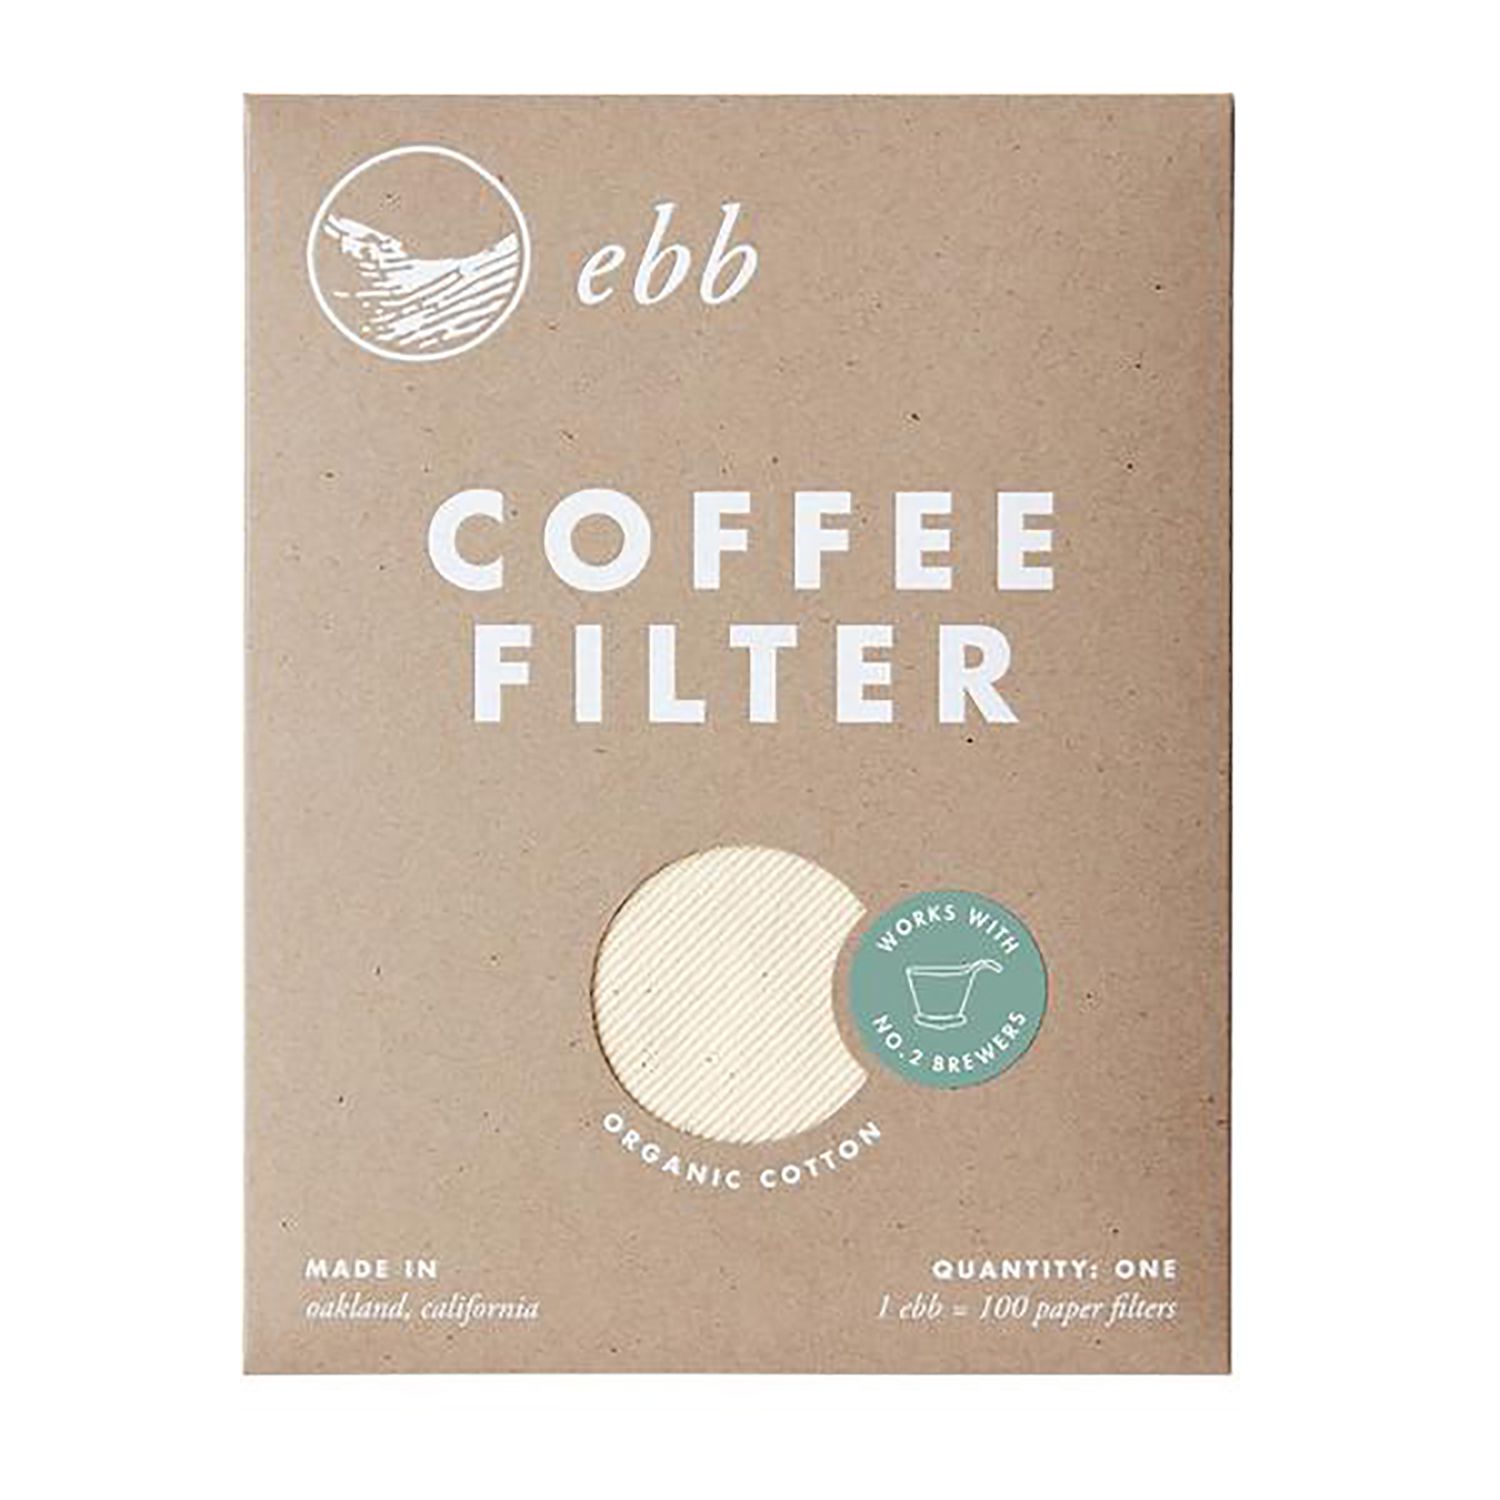 Ebb Organic Cotton Coffee Filter